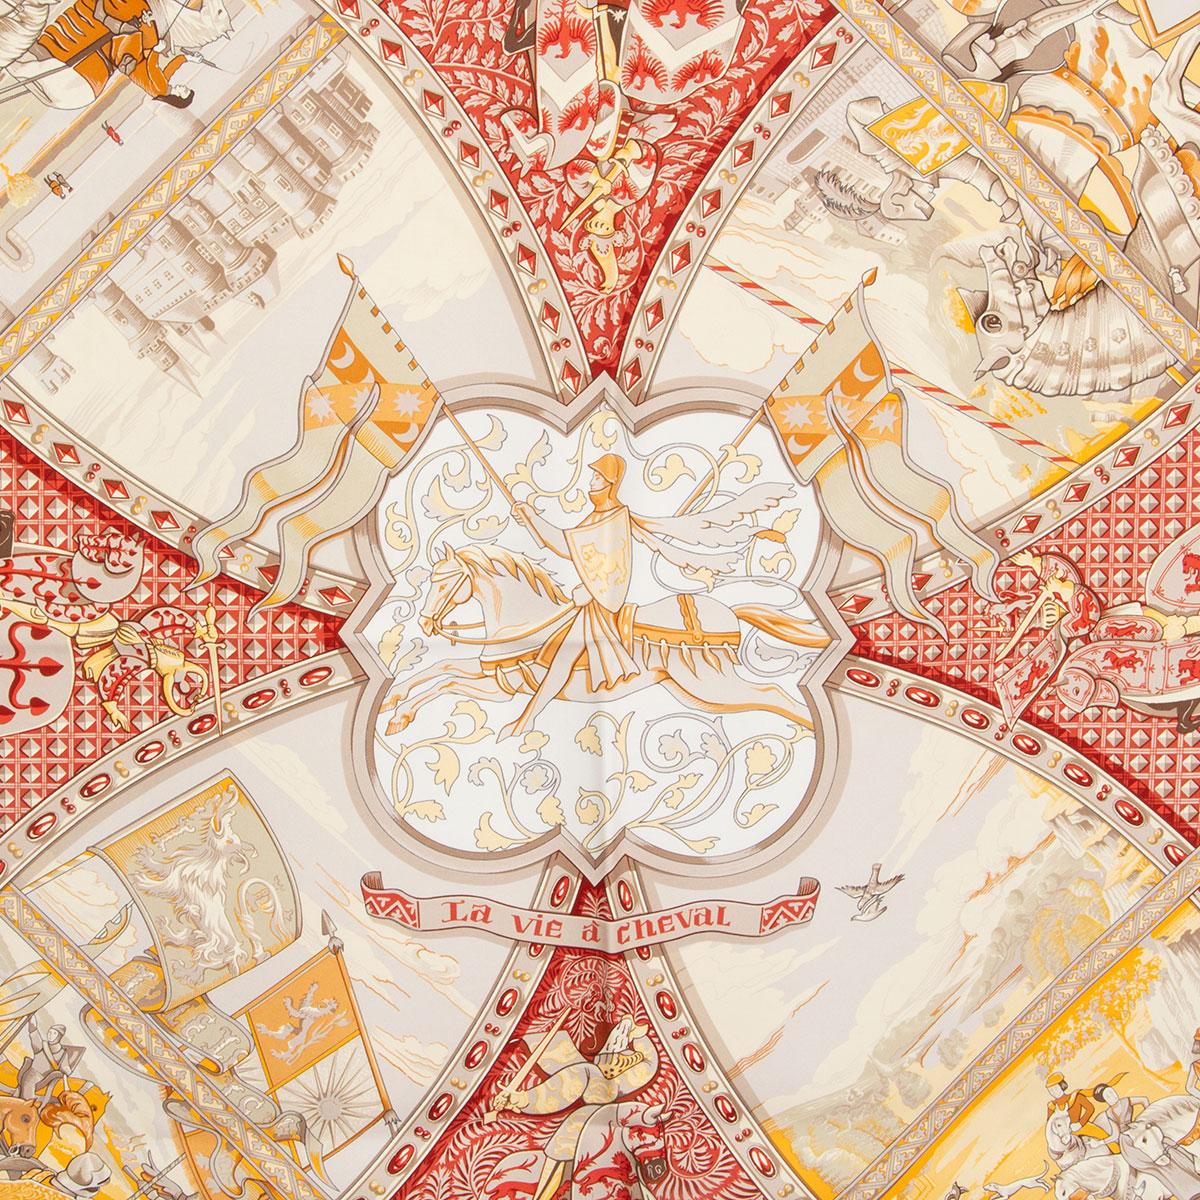 100% authentique écharpe Hermès 'La Vie à Cheval 90' par Laurence Borthoumieux en sergé de soie jaune (100%) avec bordure bicolore et fond blanc. Détails en gris, beige et rouge. A été porté et est en excellent état.

Hauteur 90cm (35.1in)
Longueur